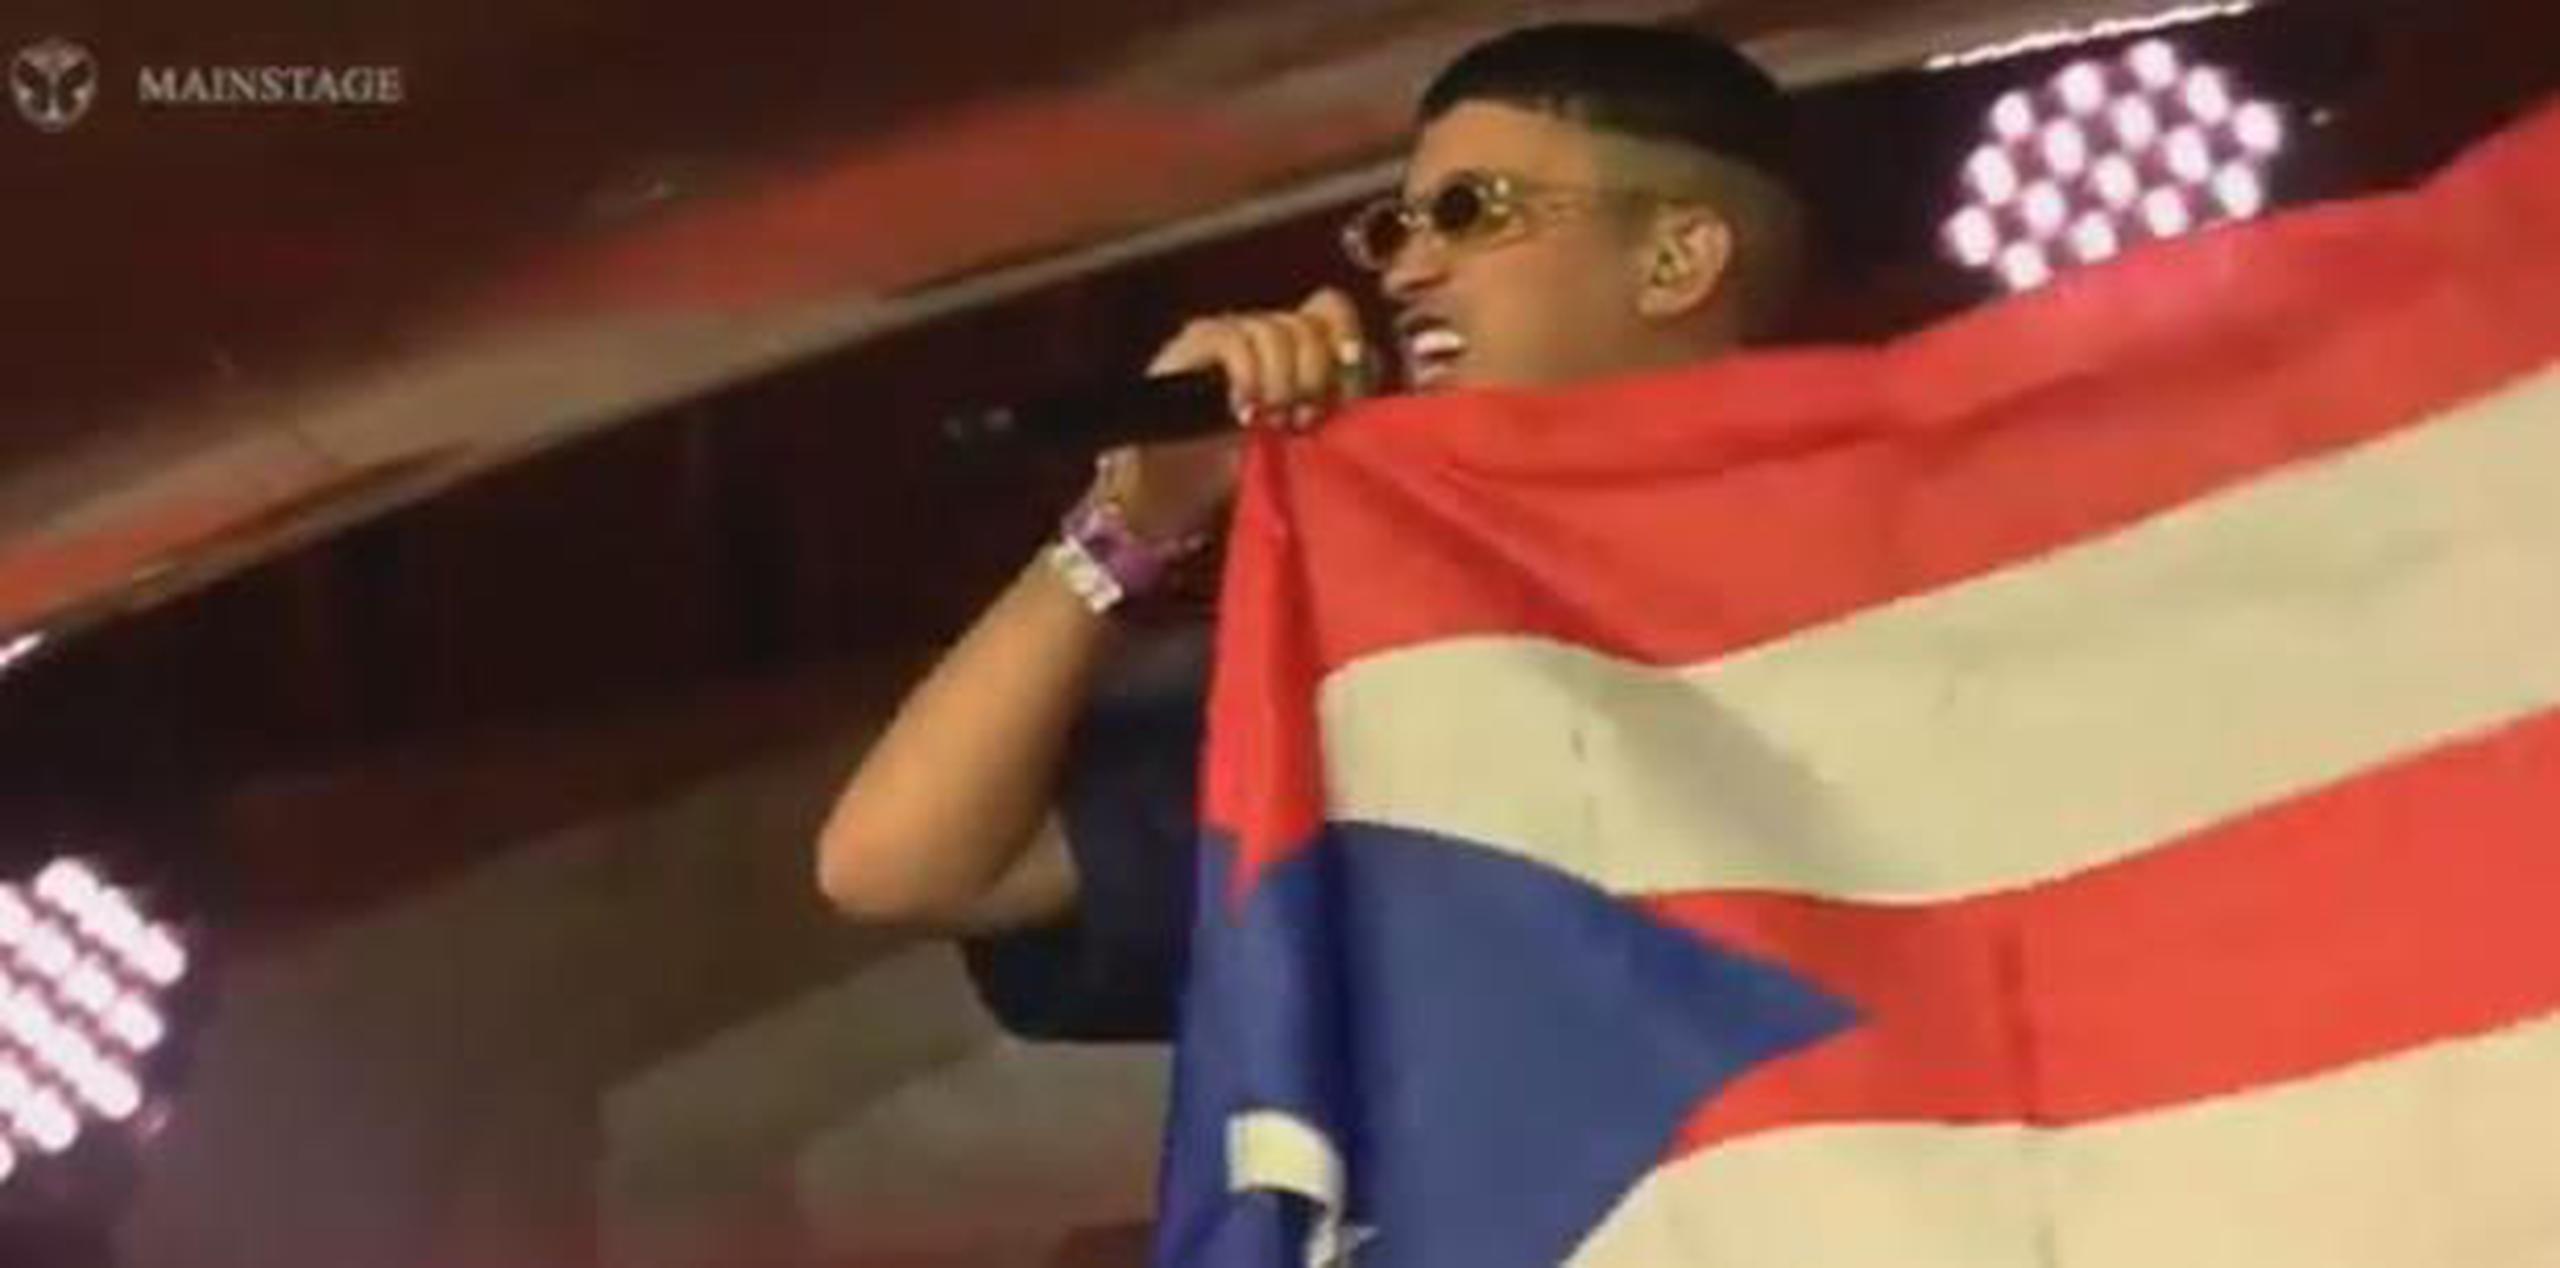 El artista boricua lució durante los casi cinco minutos que duró su presentación la bandera de Puerto Rico. (Captura)